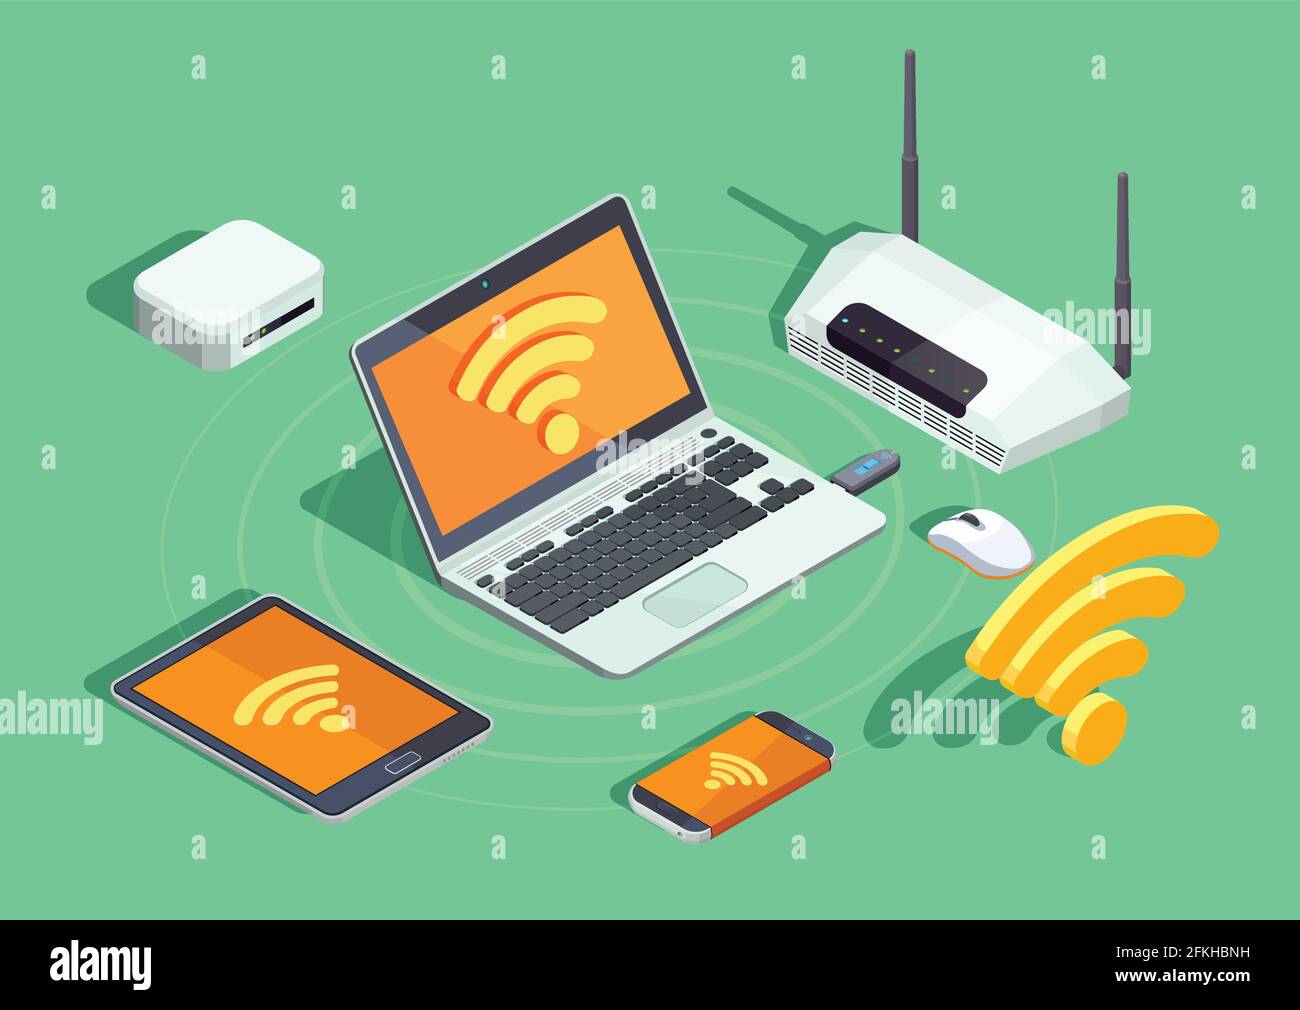 Wireless-Technologie-Geräte isometrisches Poster mit Laptop-Drucker  Smartphone-Router Und WiFi-Internet-Verbindung Symbol Vektor-Illustration  Stock-Vektorgrafik - Alamy